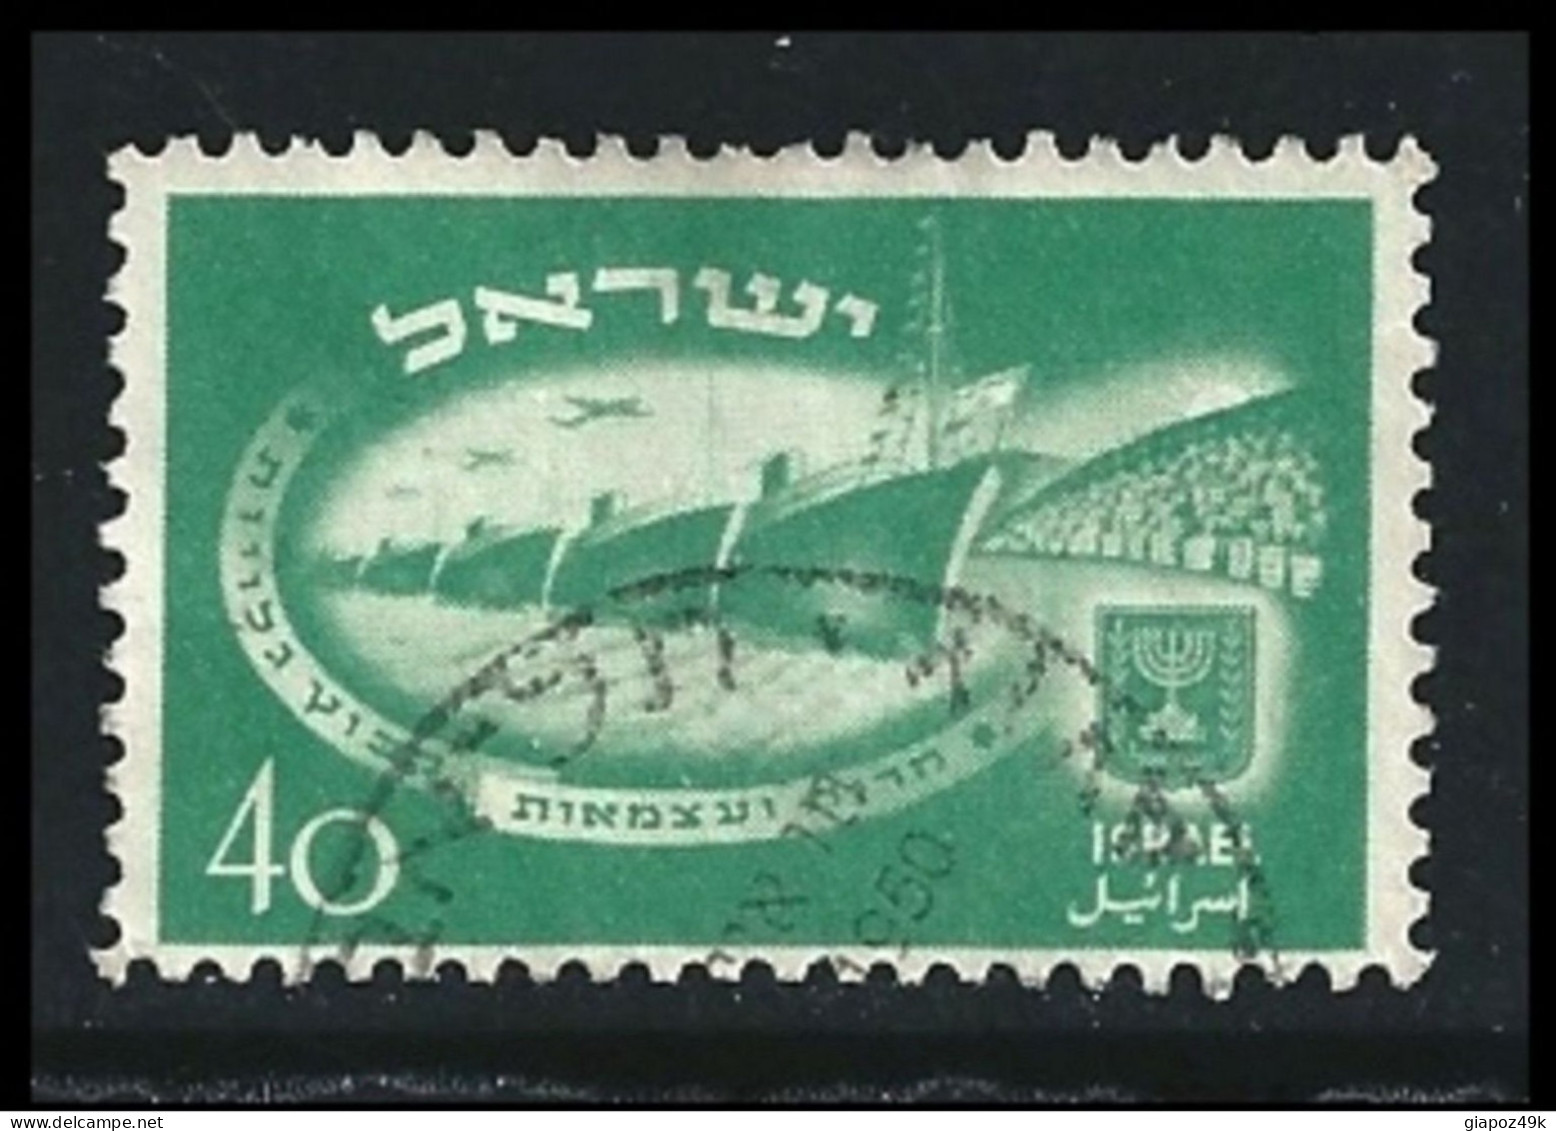 ● ISRAELE 1950 ֍ 2° Anniversario Stato ● N. 30 Usato ● Cat. ? € ● Lotto 163 ● - Usati (senza Tab)